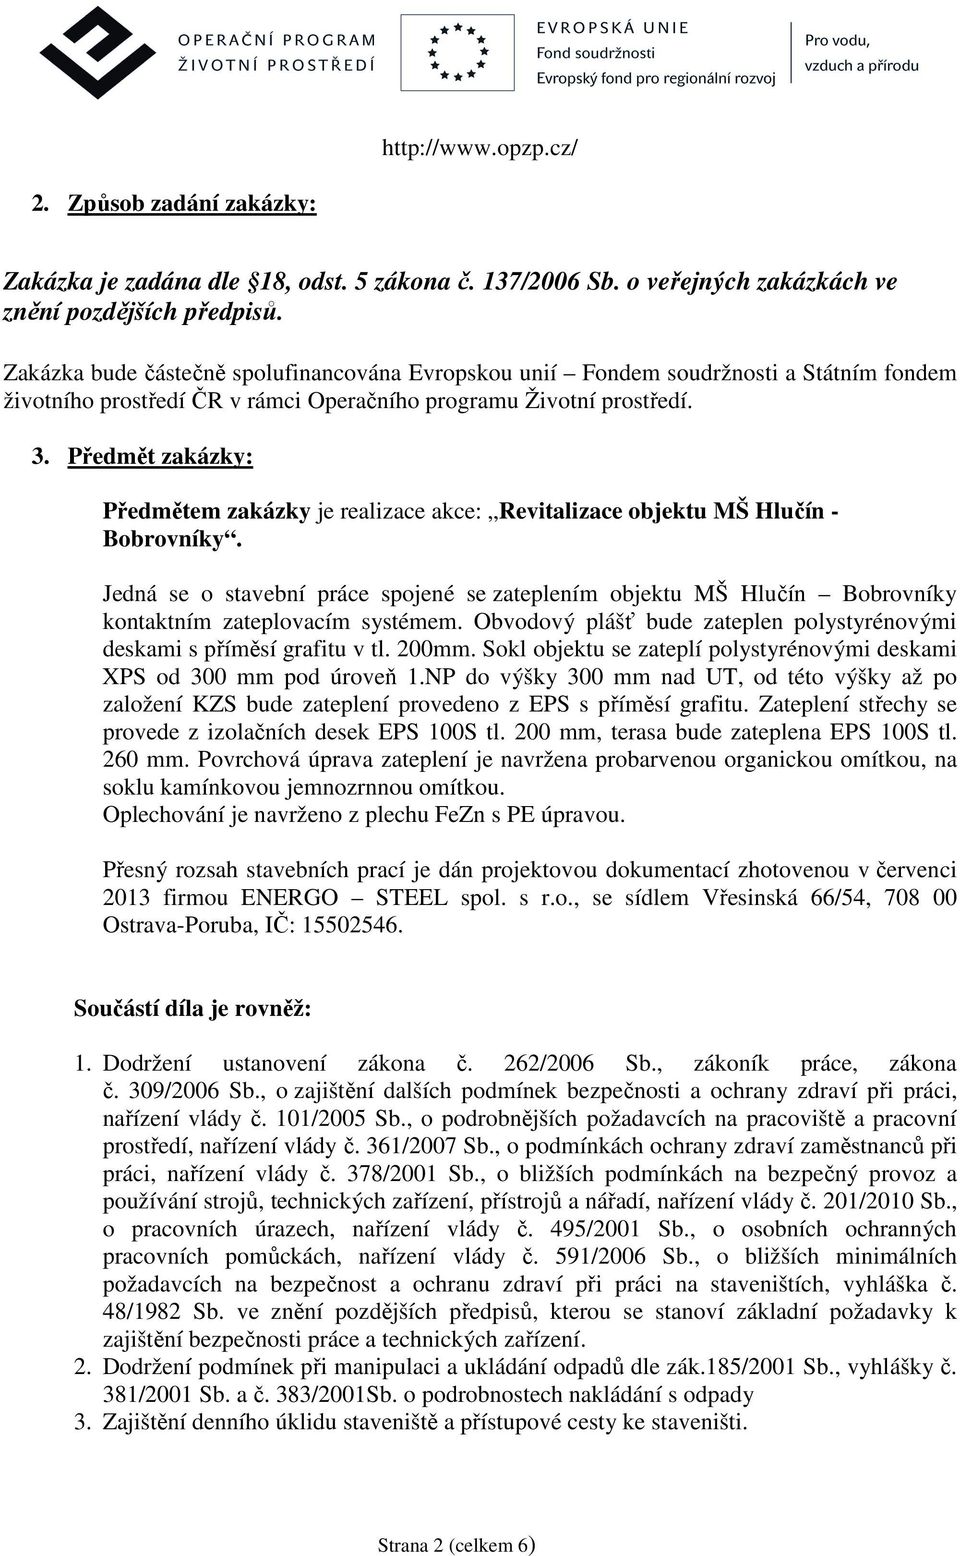 Předmět zakázky: Předmětem zakázky je realizace akce: Revitalizace objektu MŠ Hlučín - Bobrovníky.